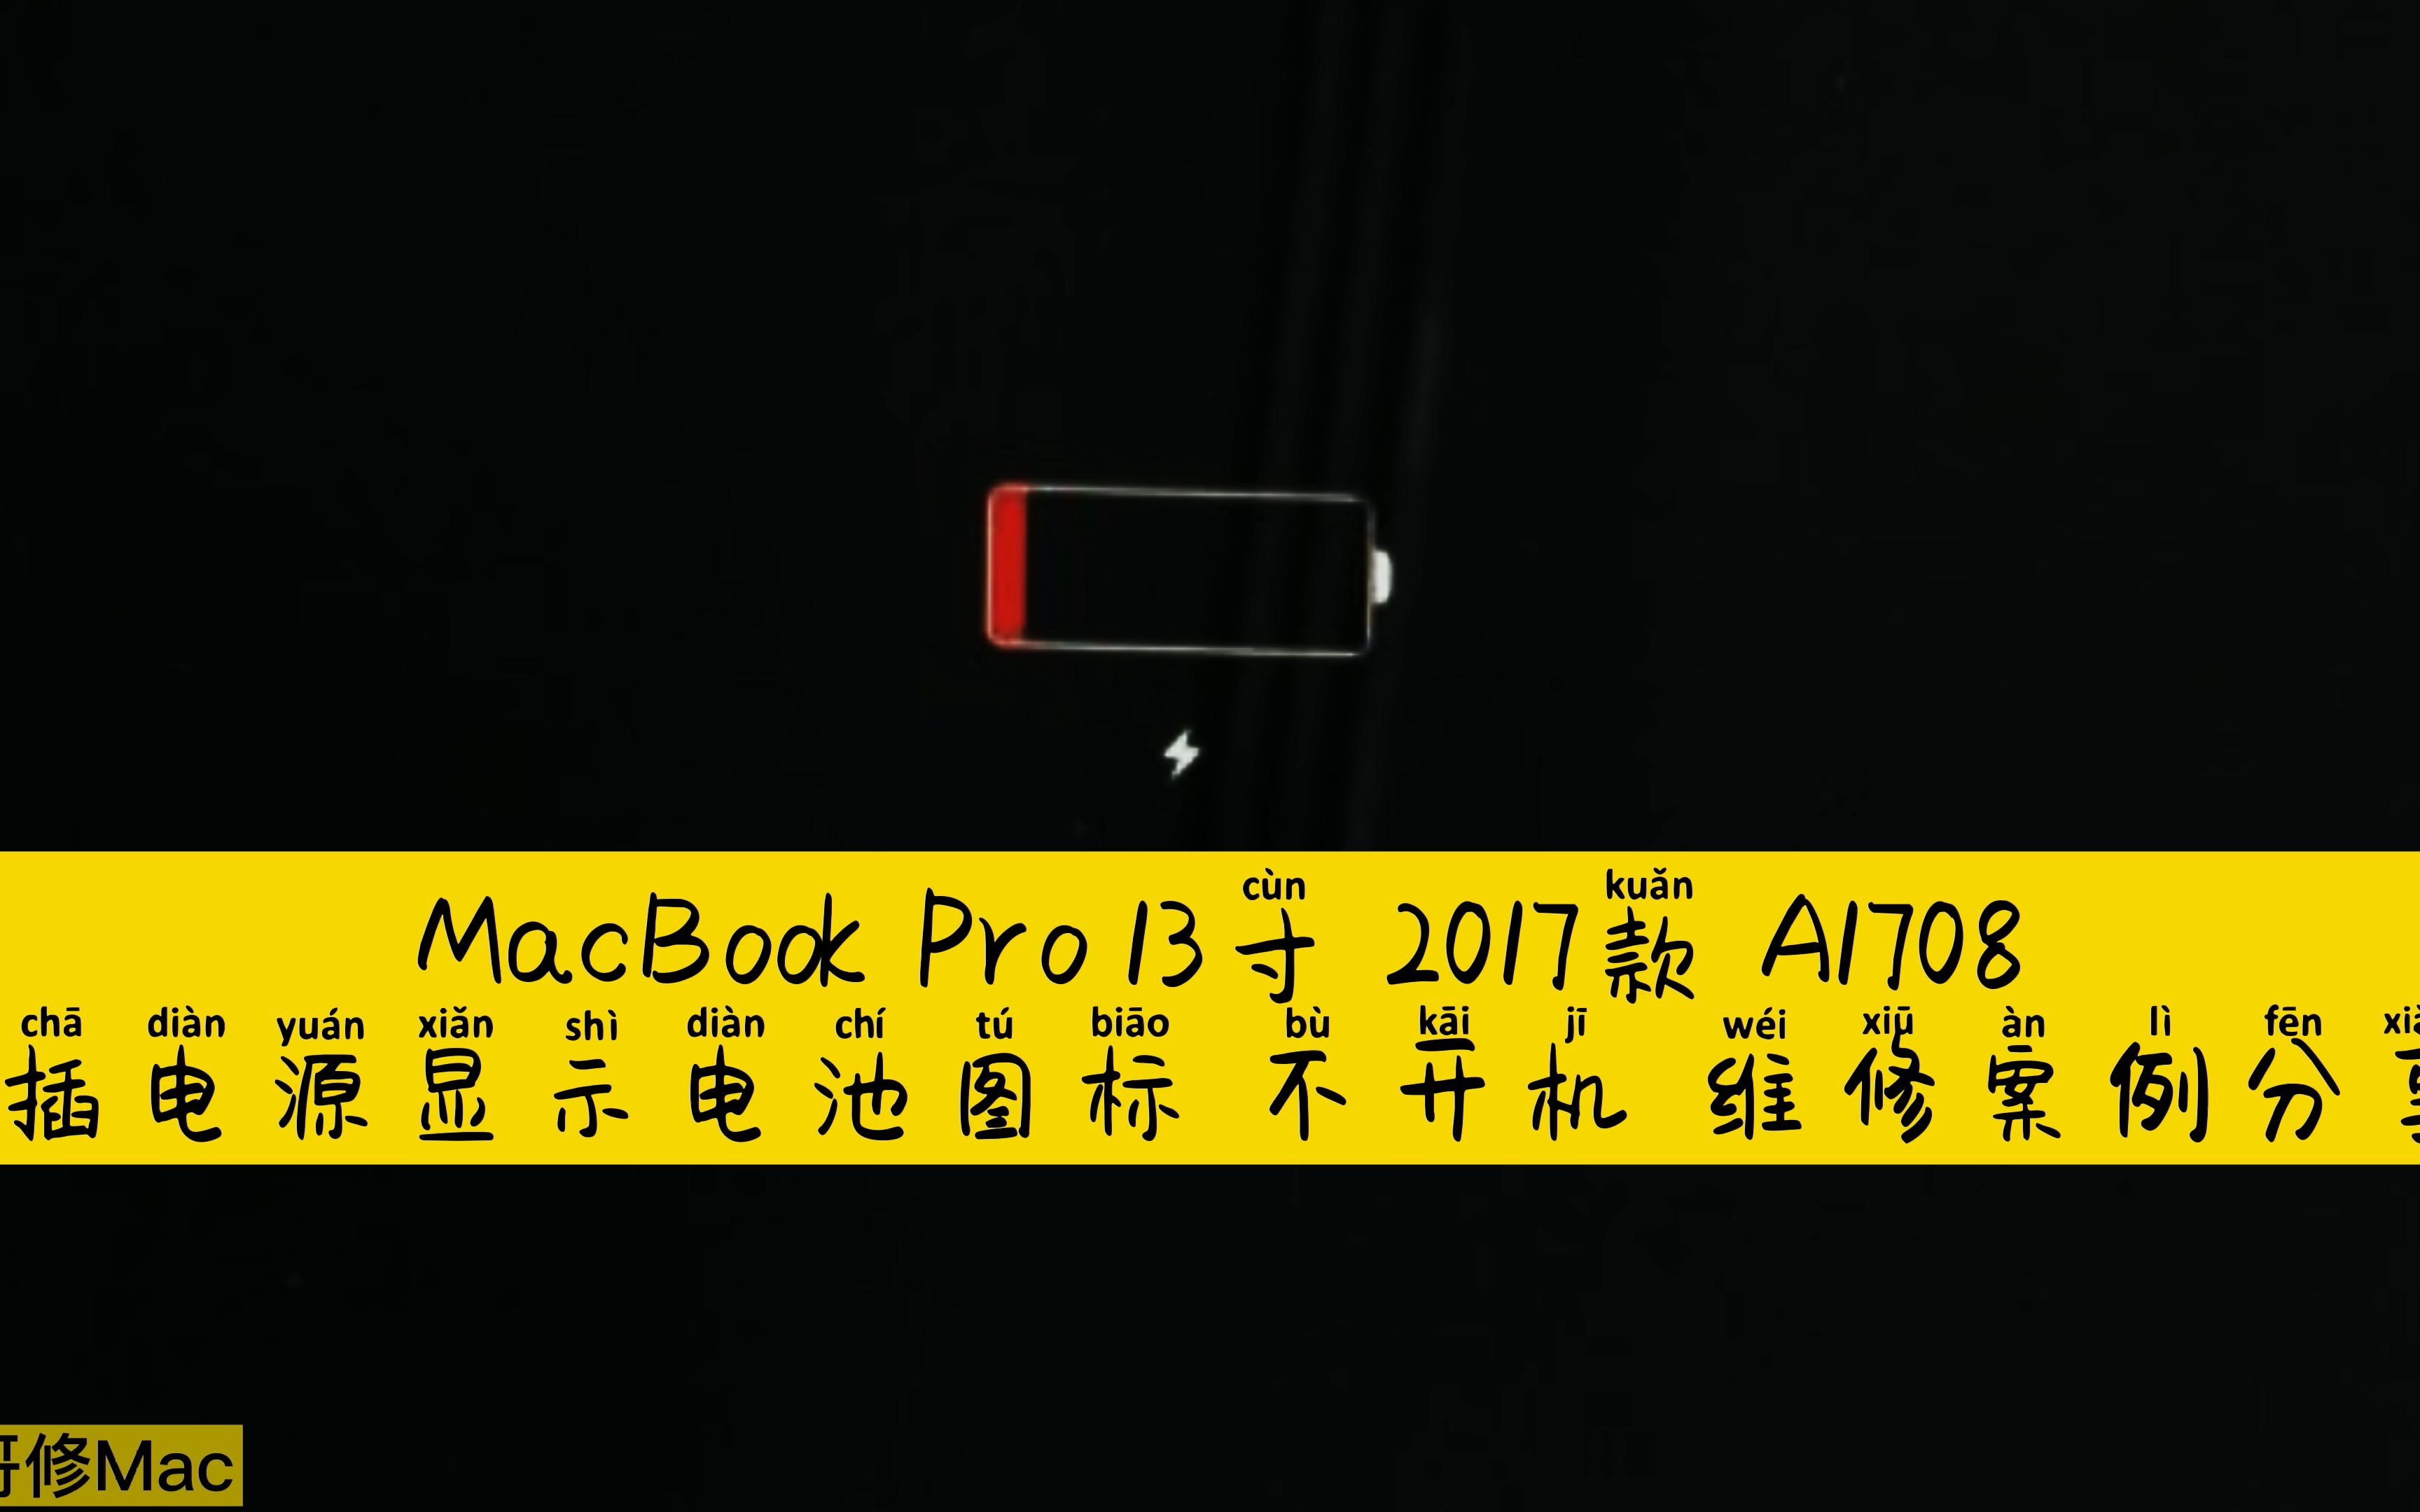 MacBook Pro 13寸2017款A1708 显示电池图标不开机维修案例分享-哔哩哔哩